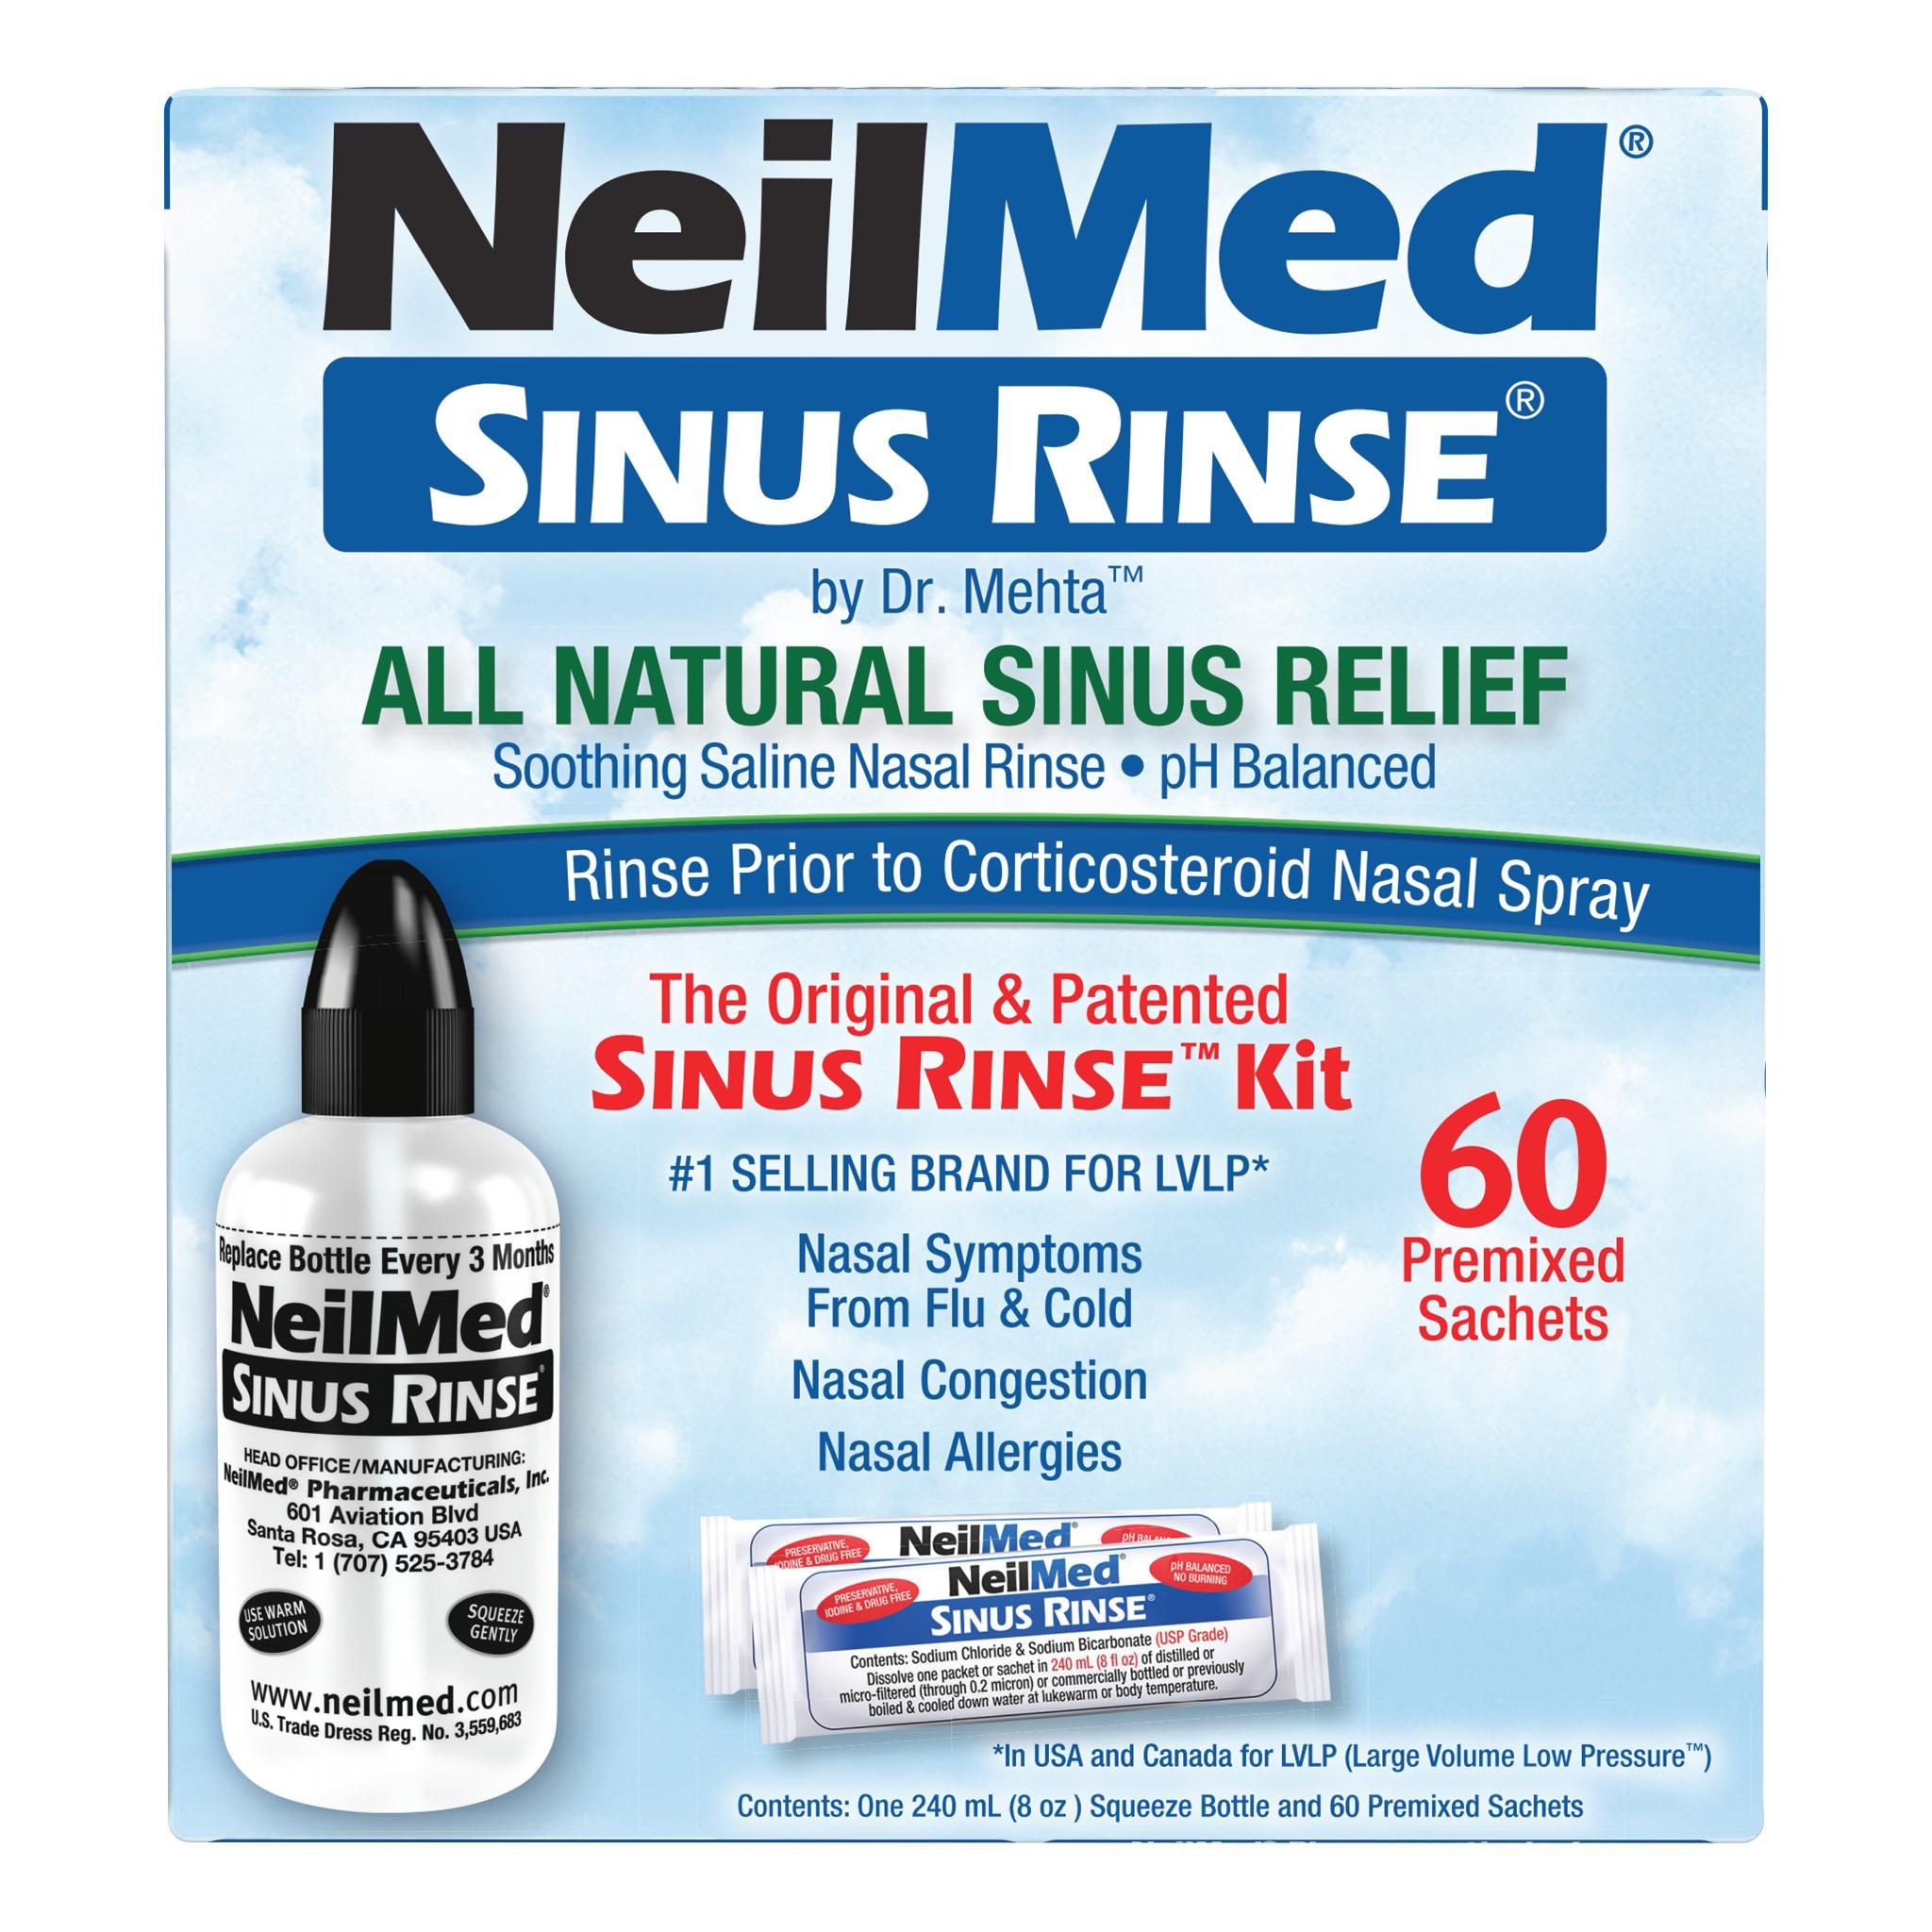 Buy NeilMed Sinus Rinse Starter Kit 10 Sachets Online at Chemist